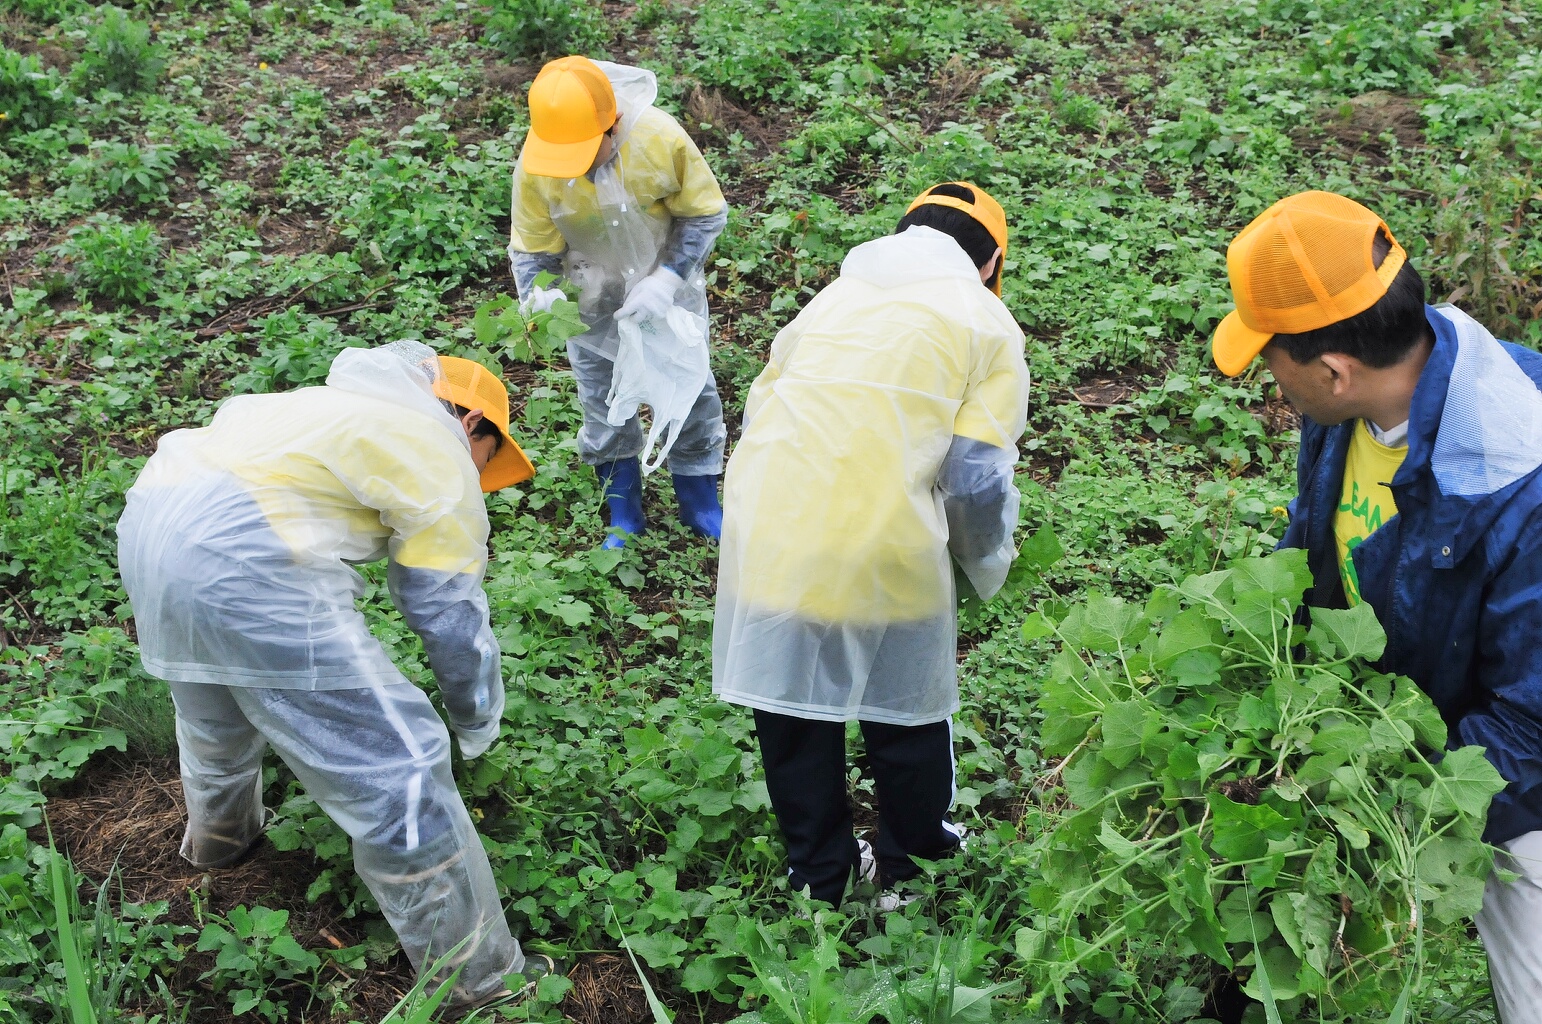 黄色い帽子をかぶった人たちが、かがみこんで雑草を駆除している千曲川クリーン作戦の様子の写真